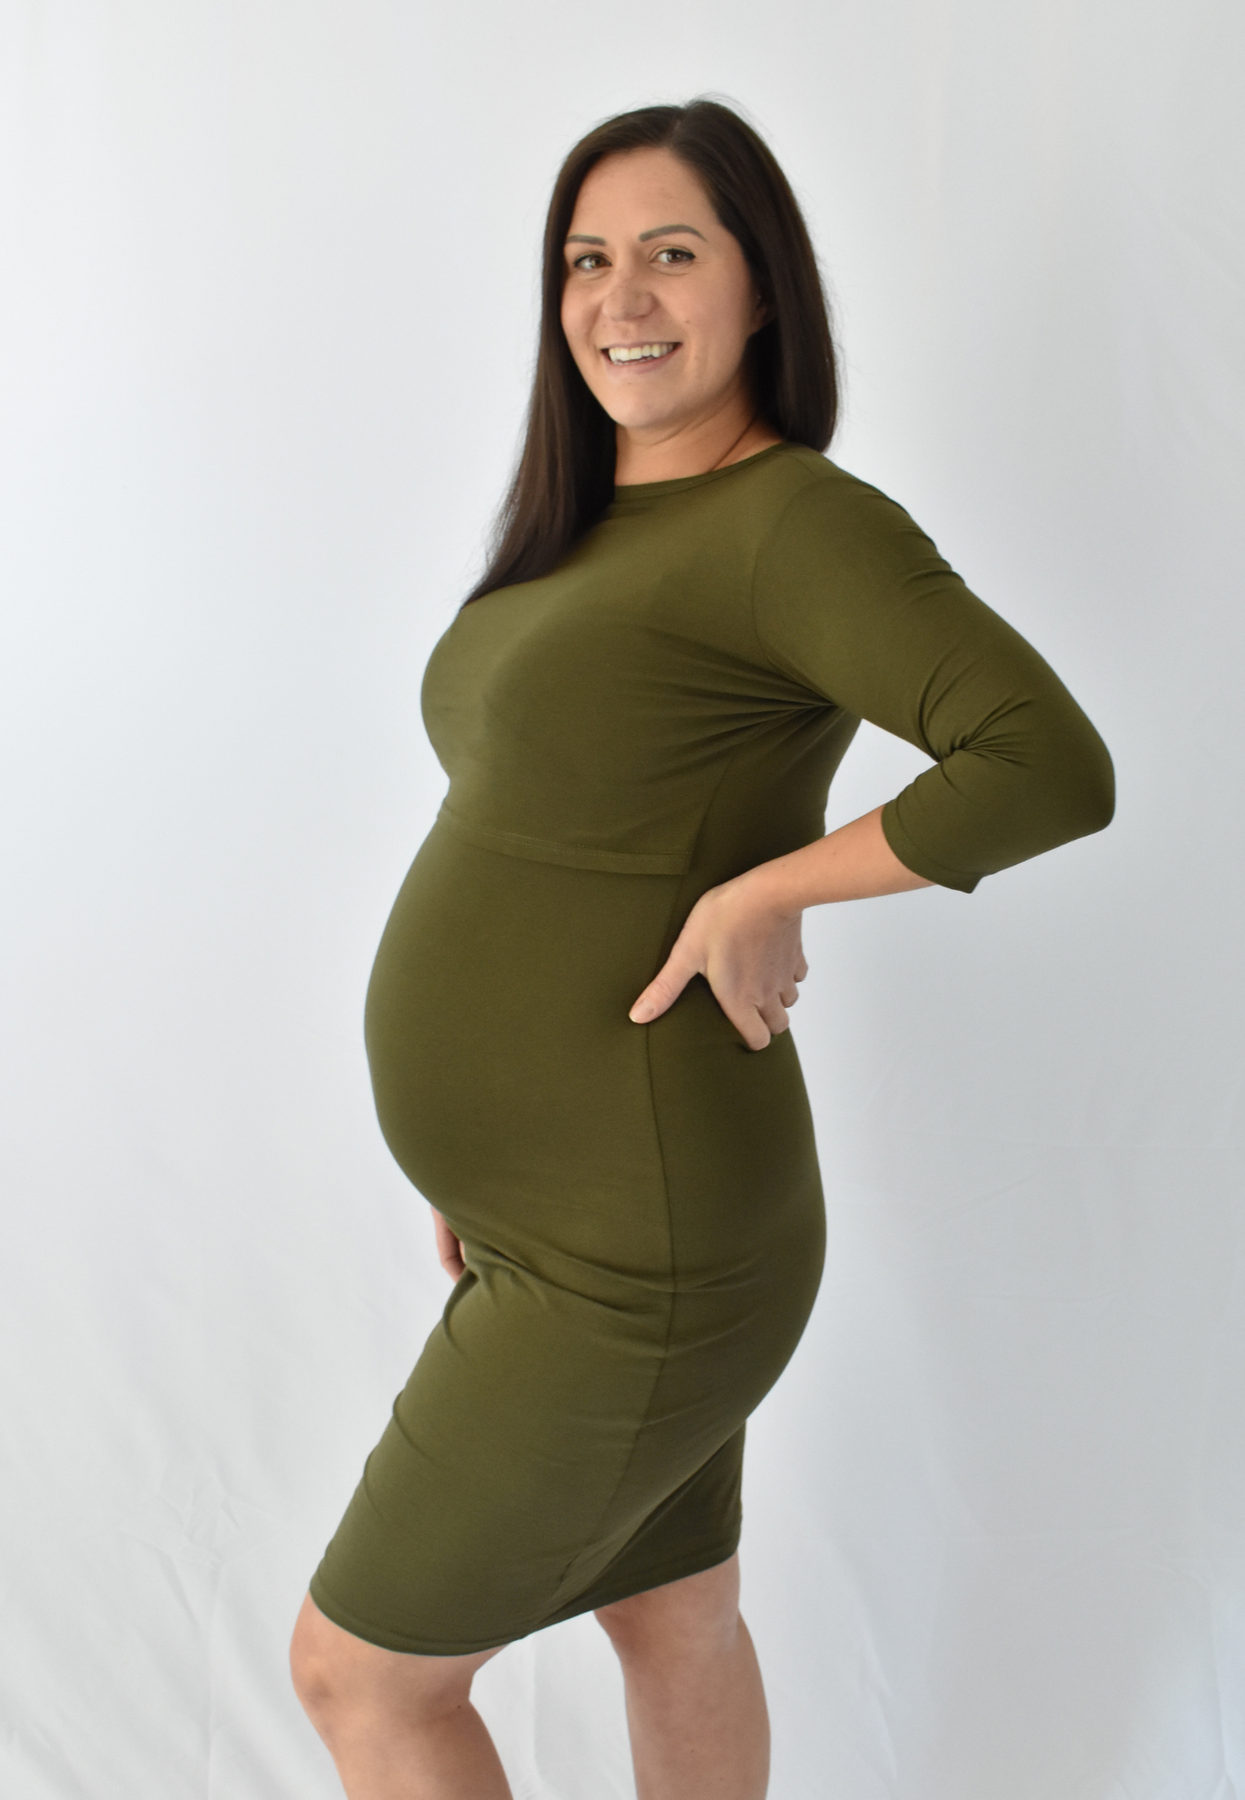 Ella Bella Nursing, Taryn 3/4 Sleeve Maternity & Nursing Dress